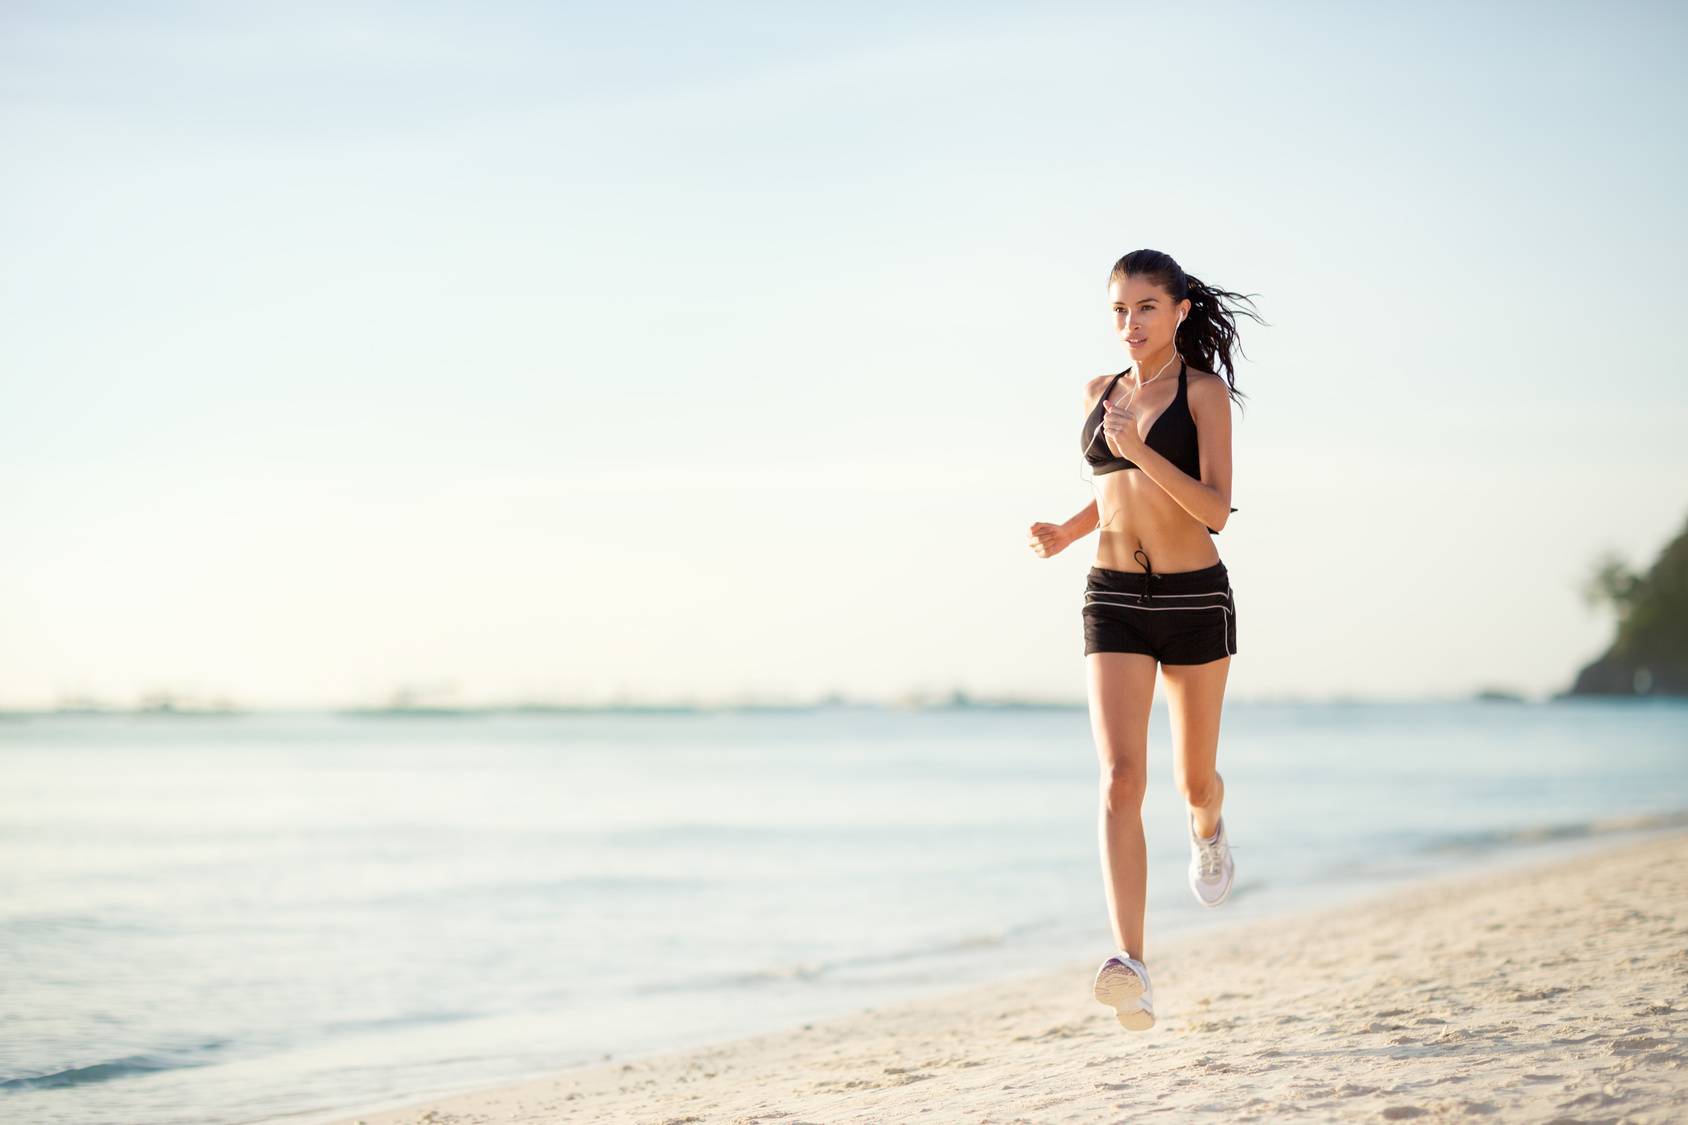 Kremy z filtrem przeciwsłonecznym. Kobieta biega po plaży w stroju sportowym.